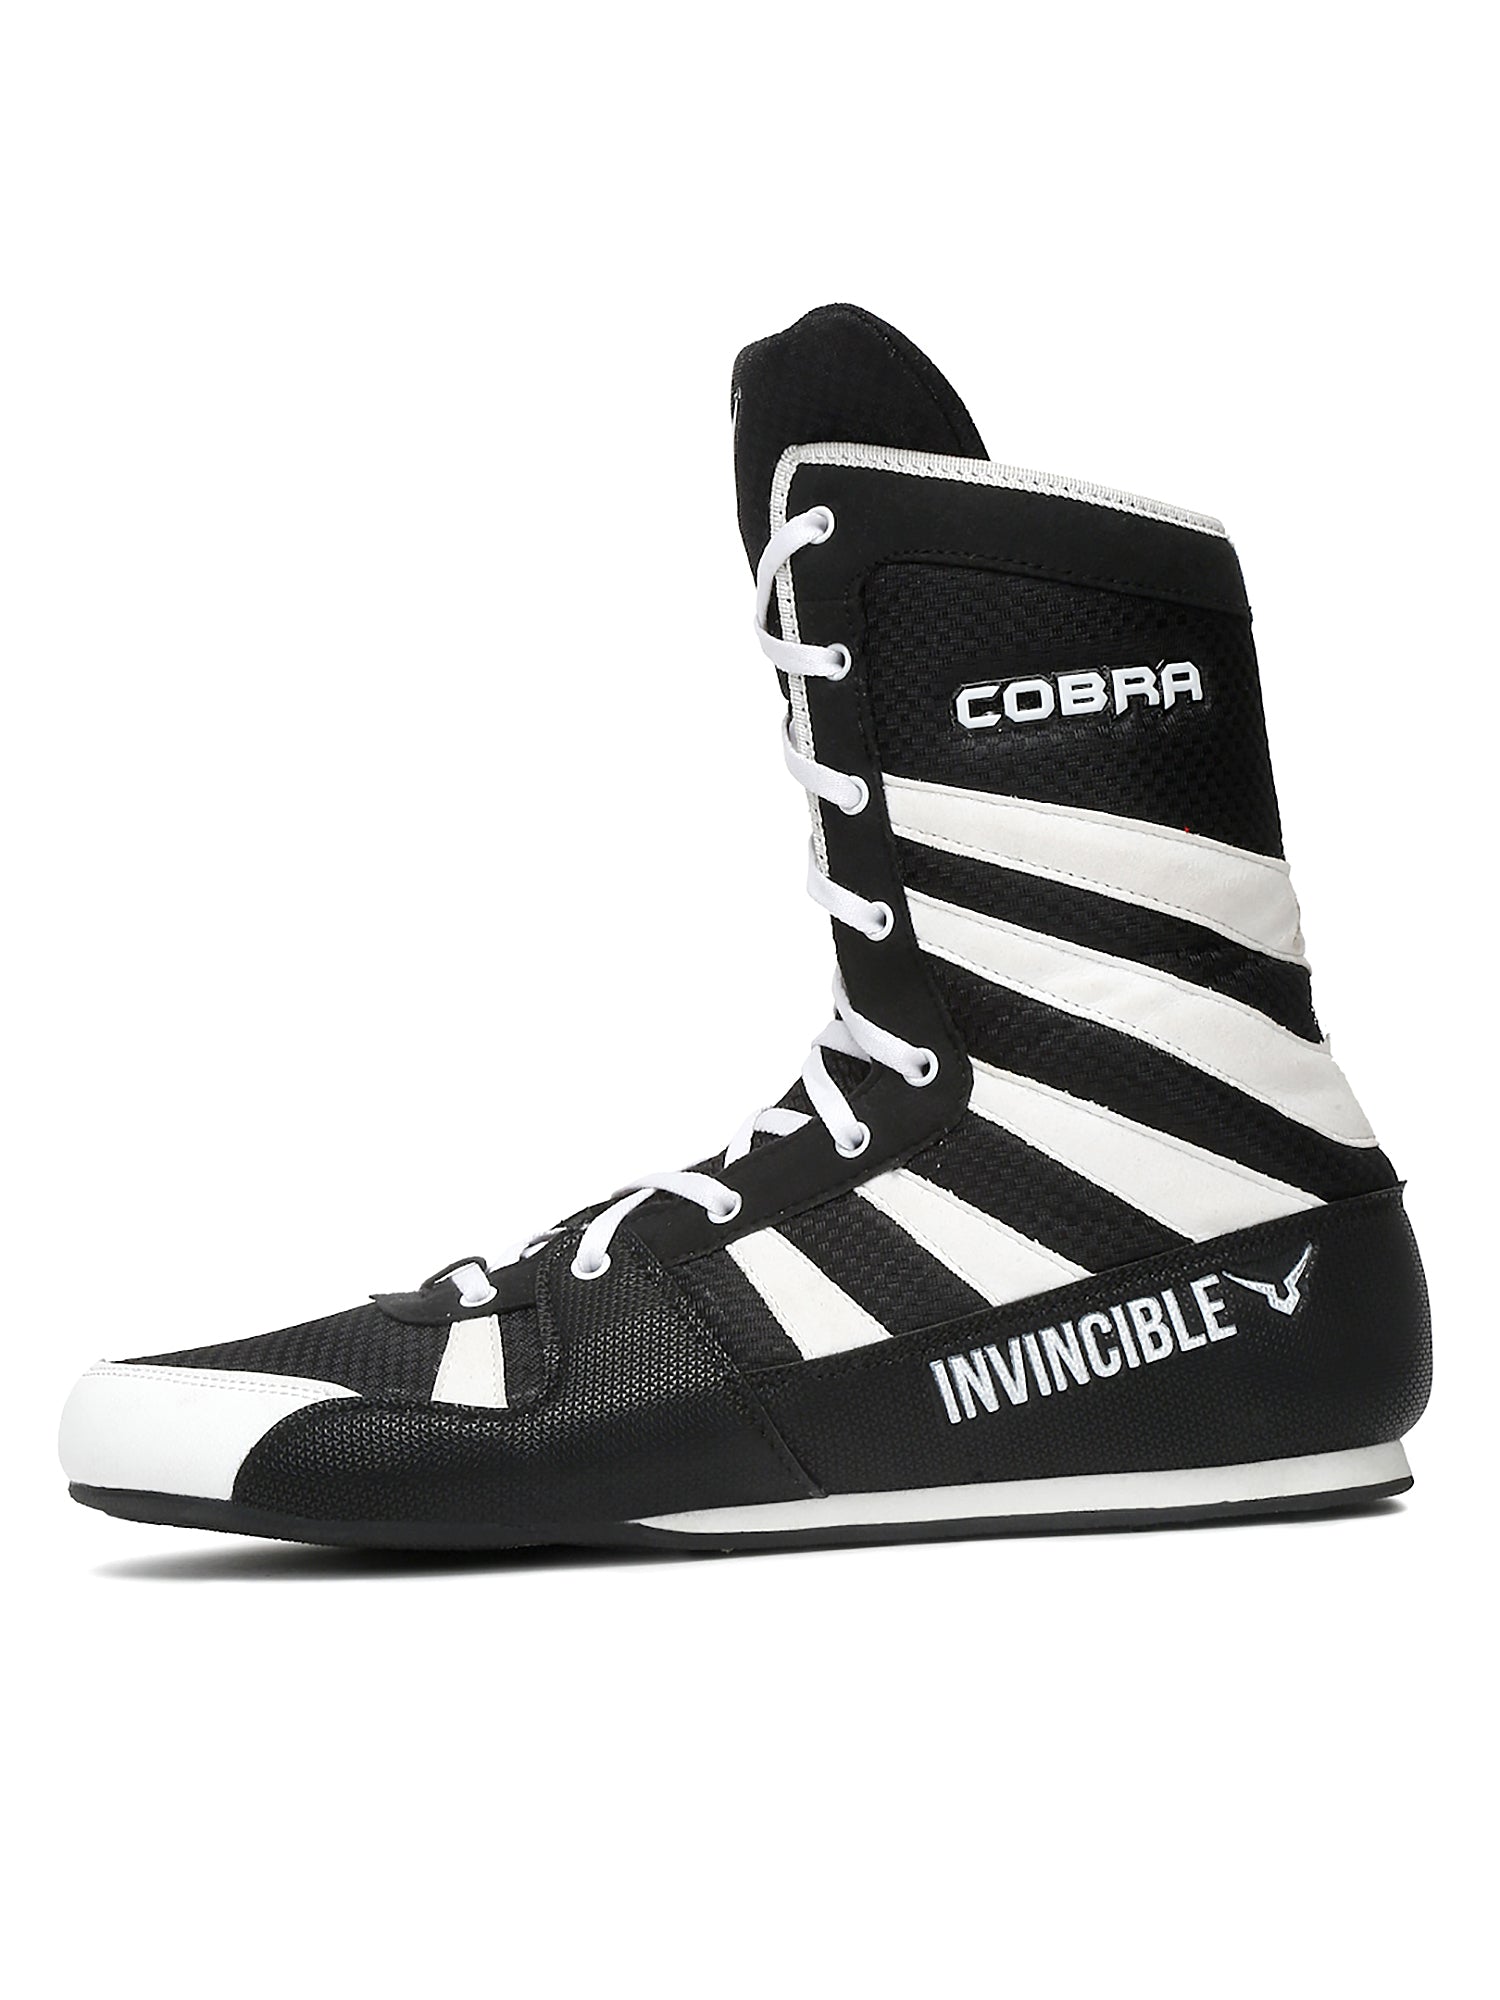 Invincible Cobra Boxing Shoes